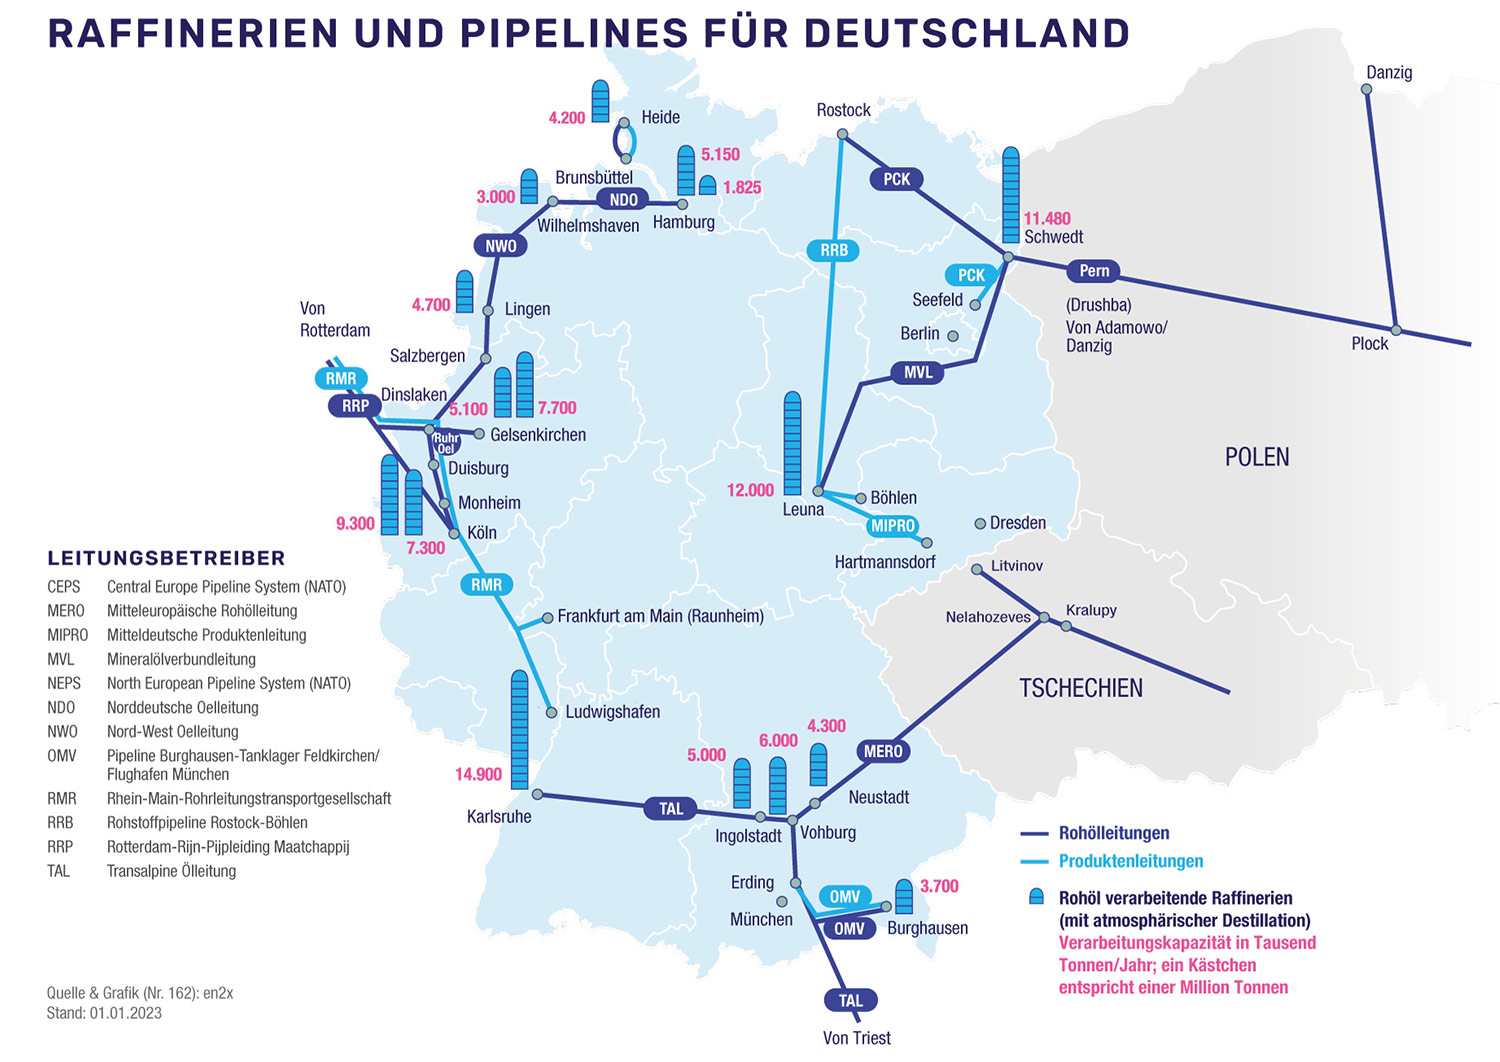 Grafische Darstellung der Raffinerien und Pipelines für Deutschland